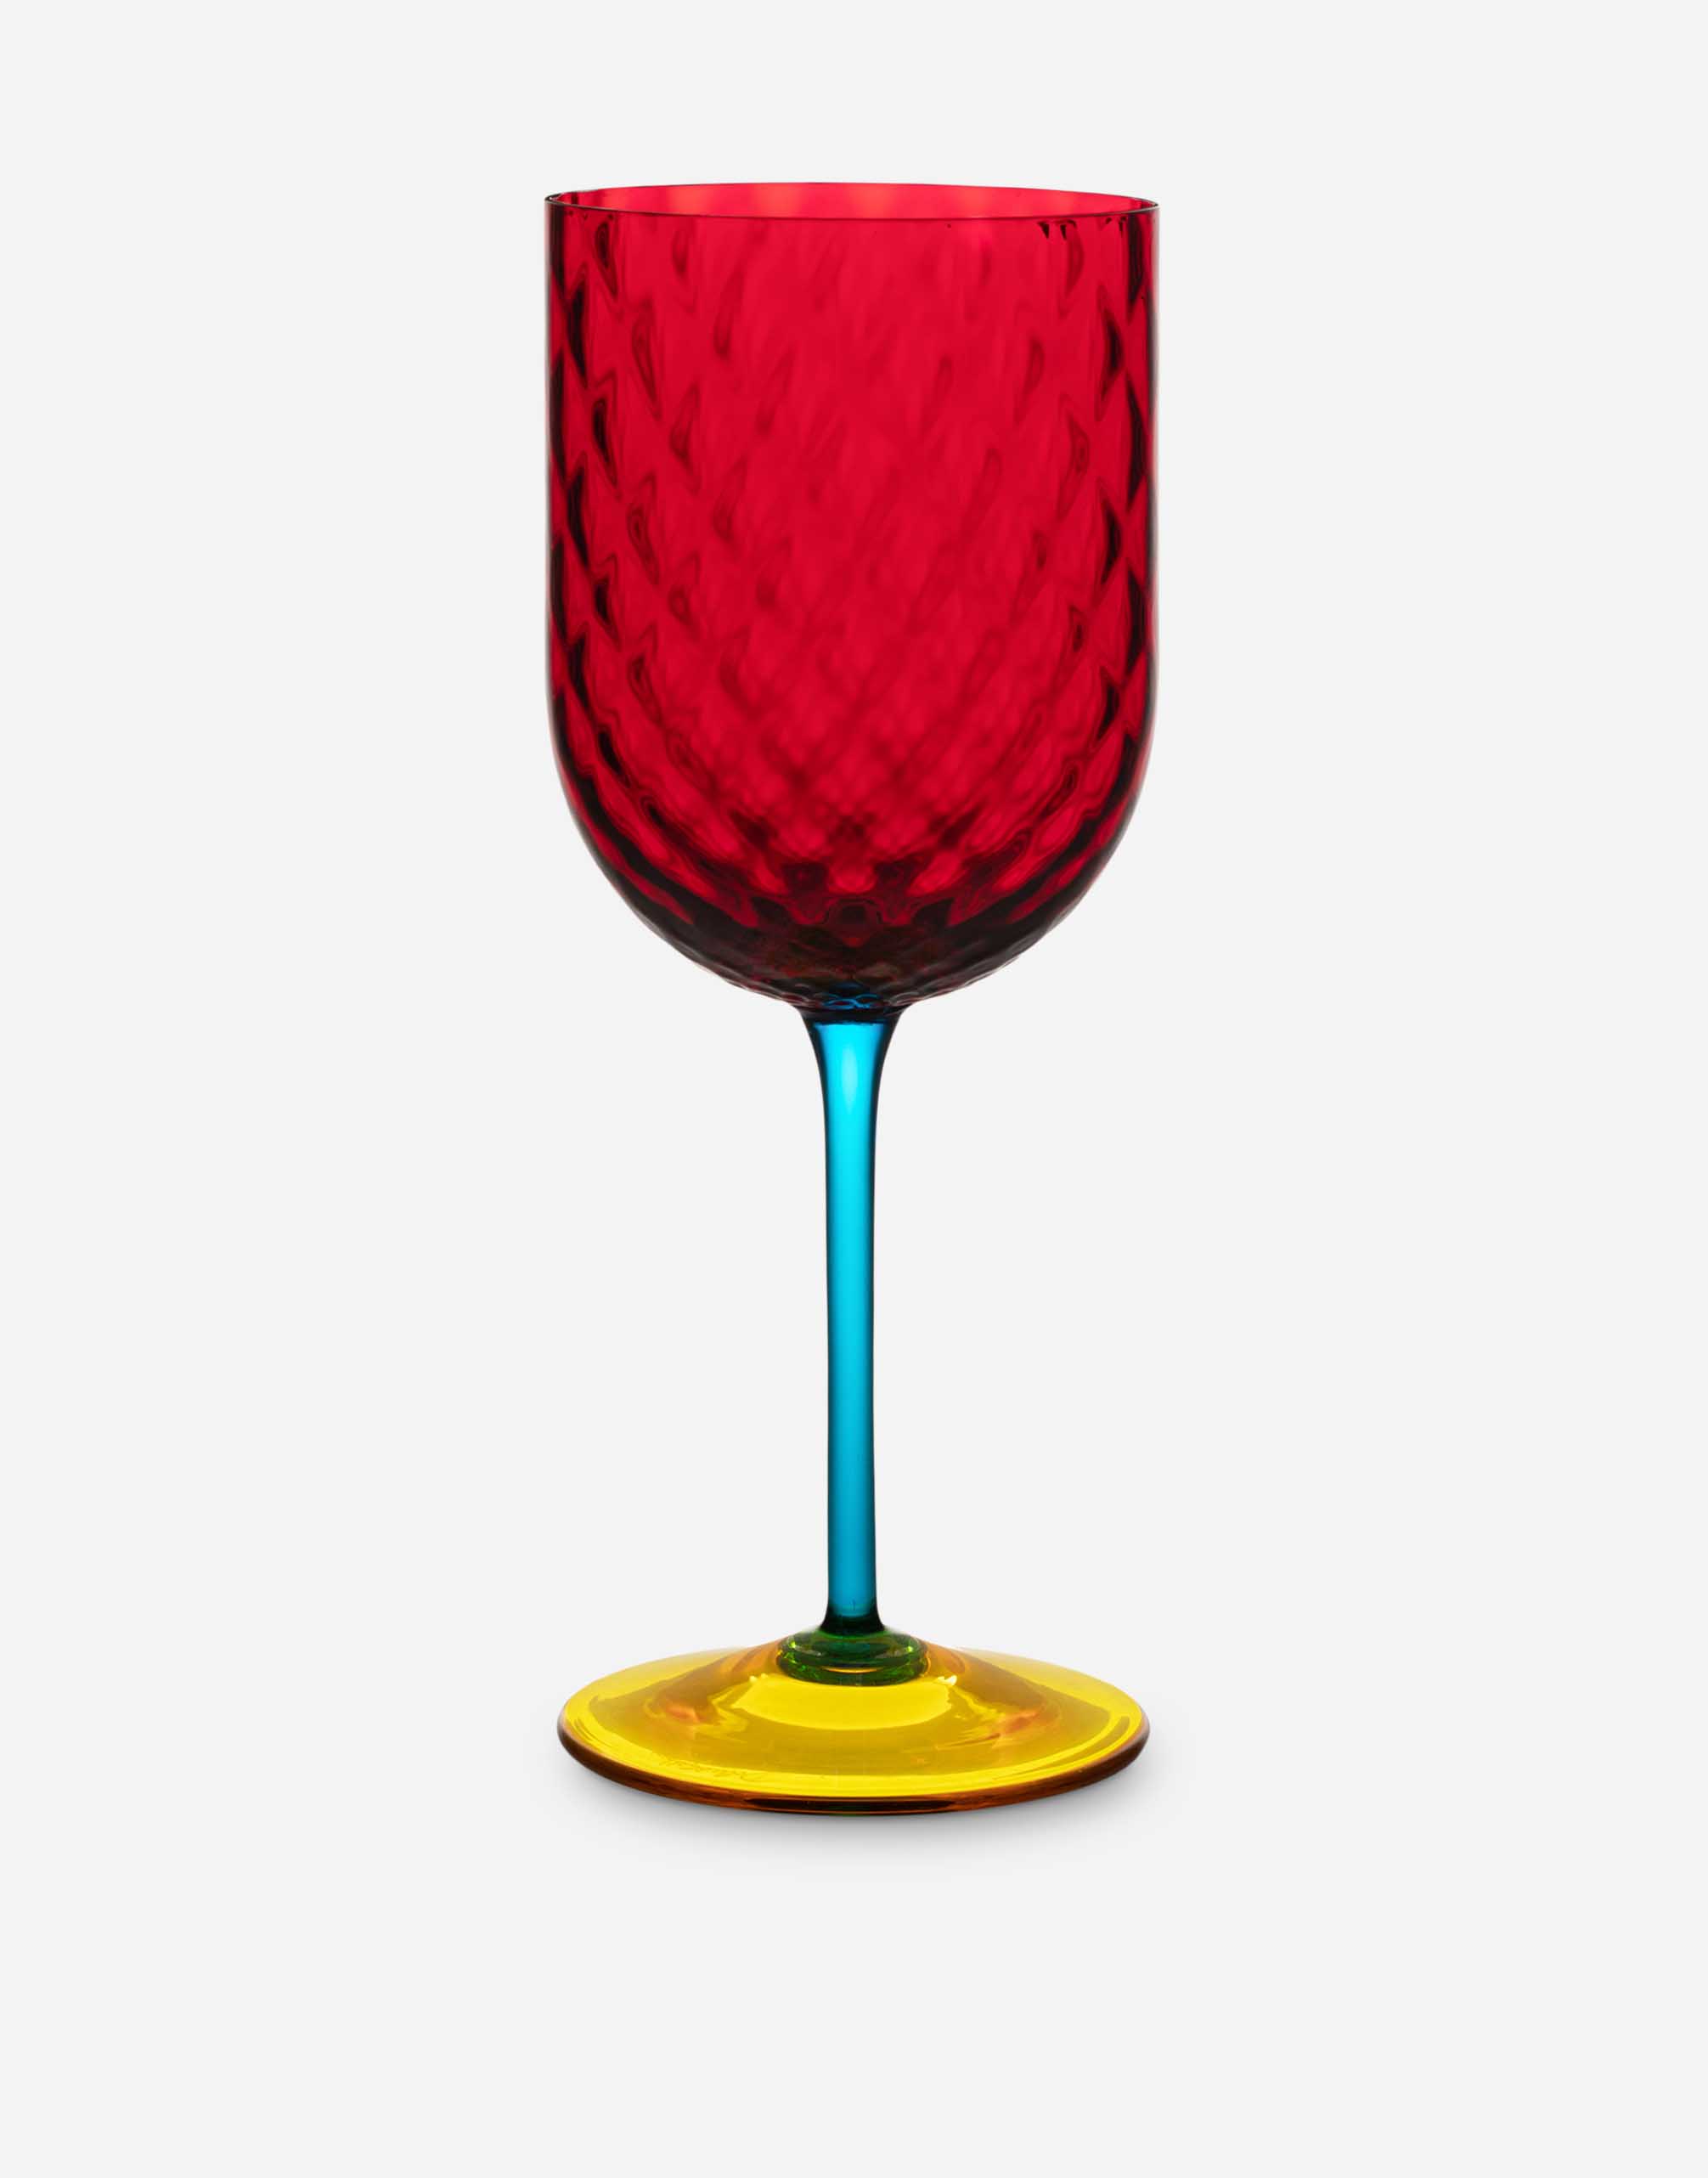 Dolce & Gabbana Hand-blown Murano Red Wine Glass In Multicolor